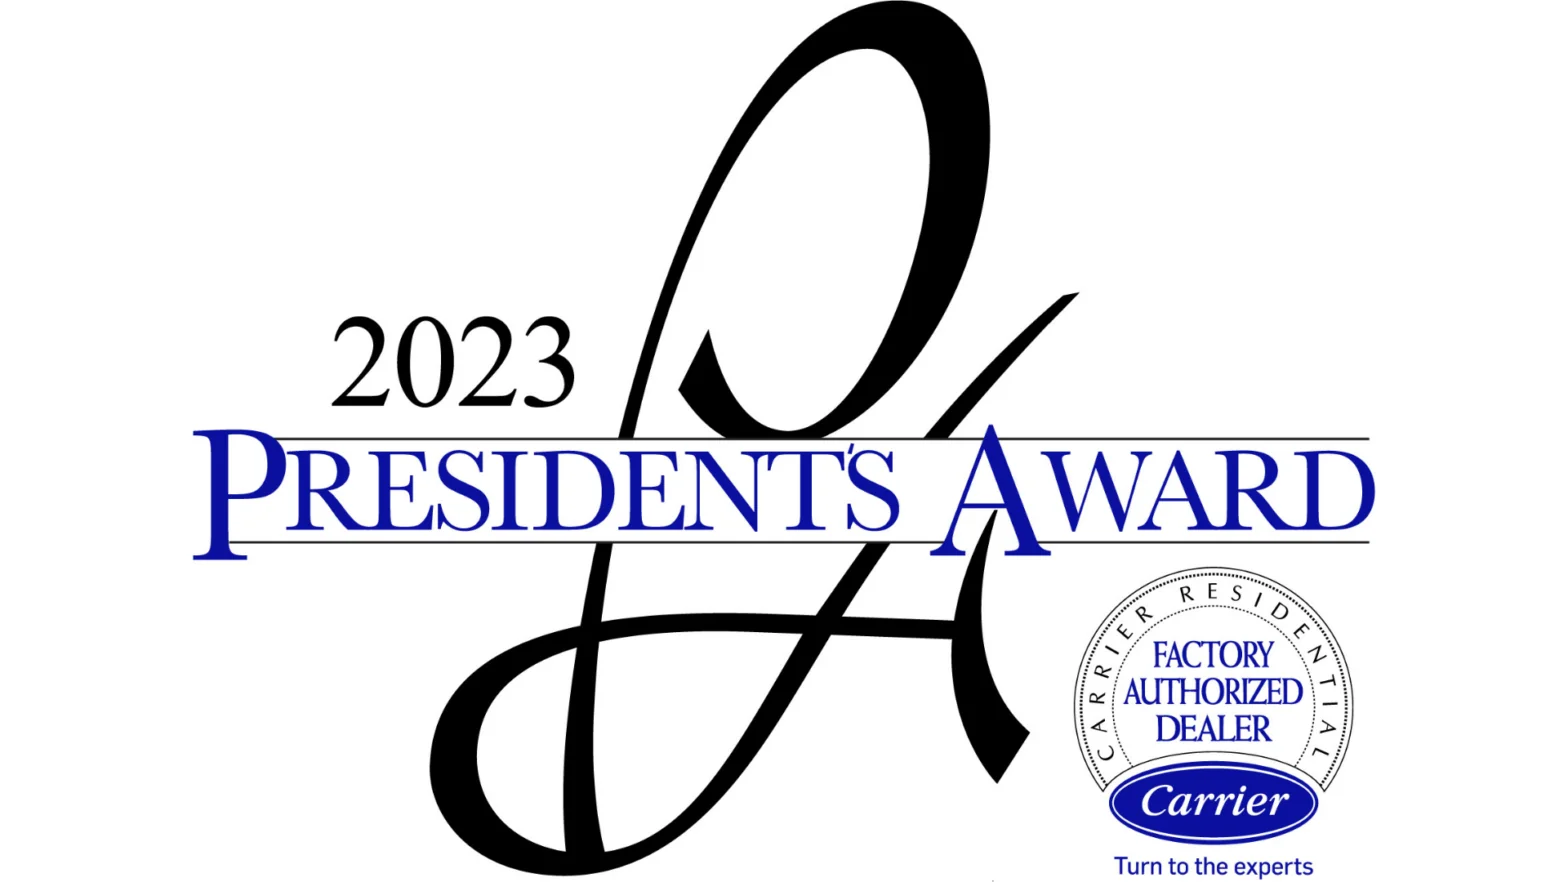 2023 President’s Award from Carrier